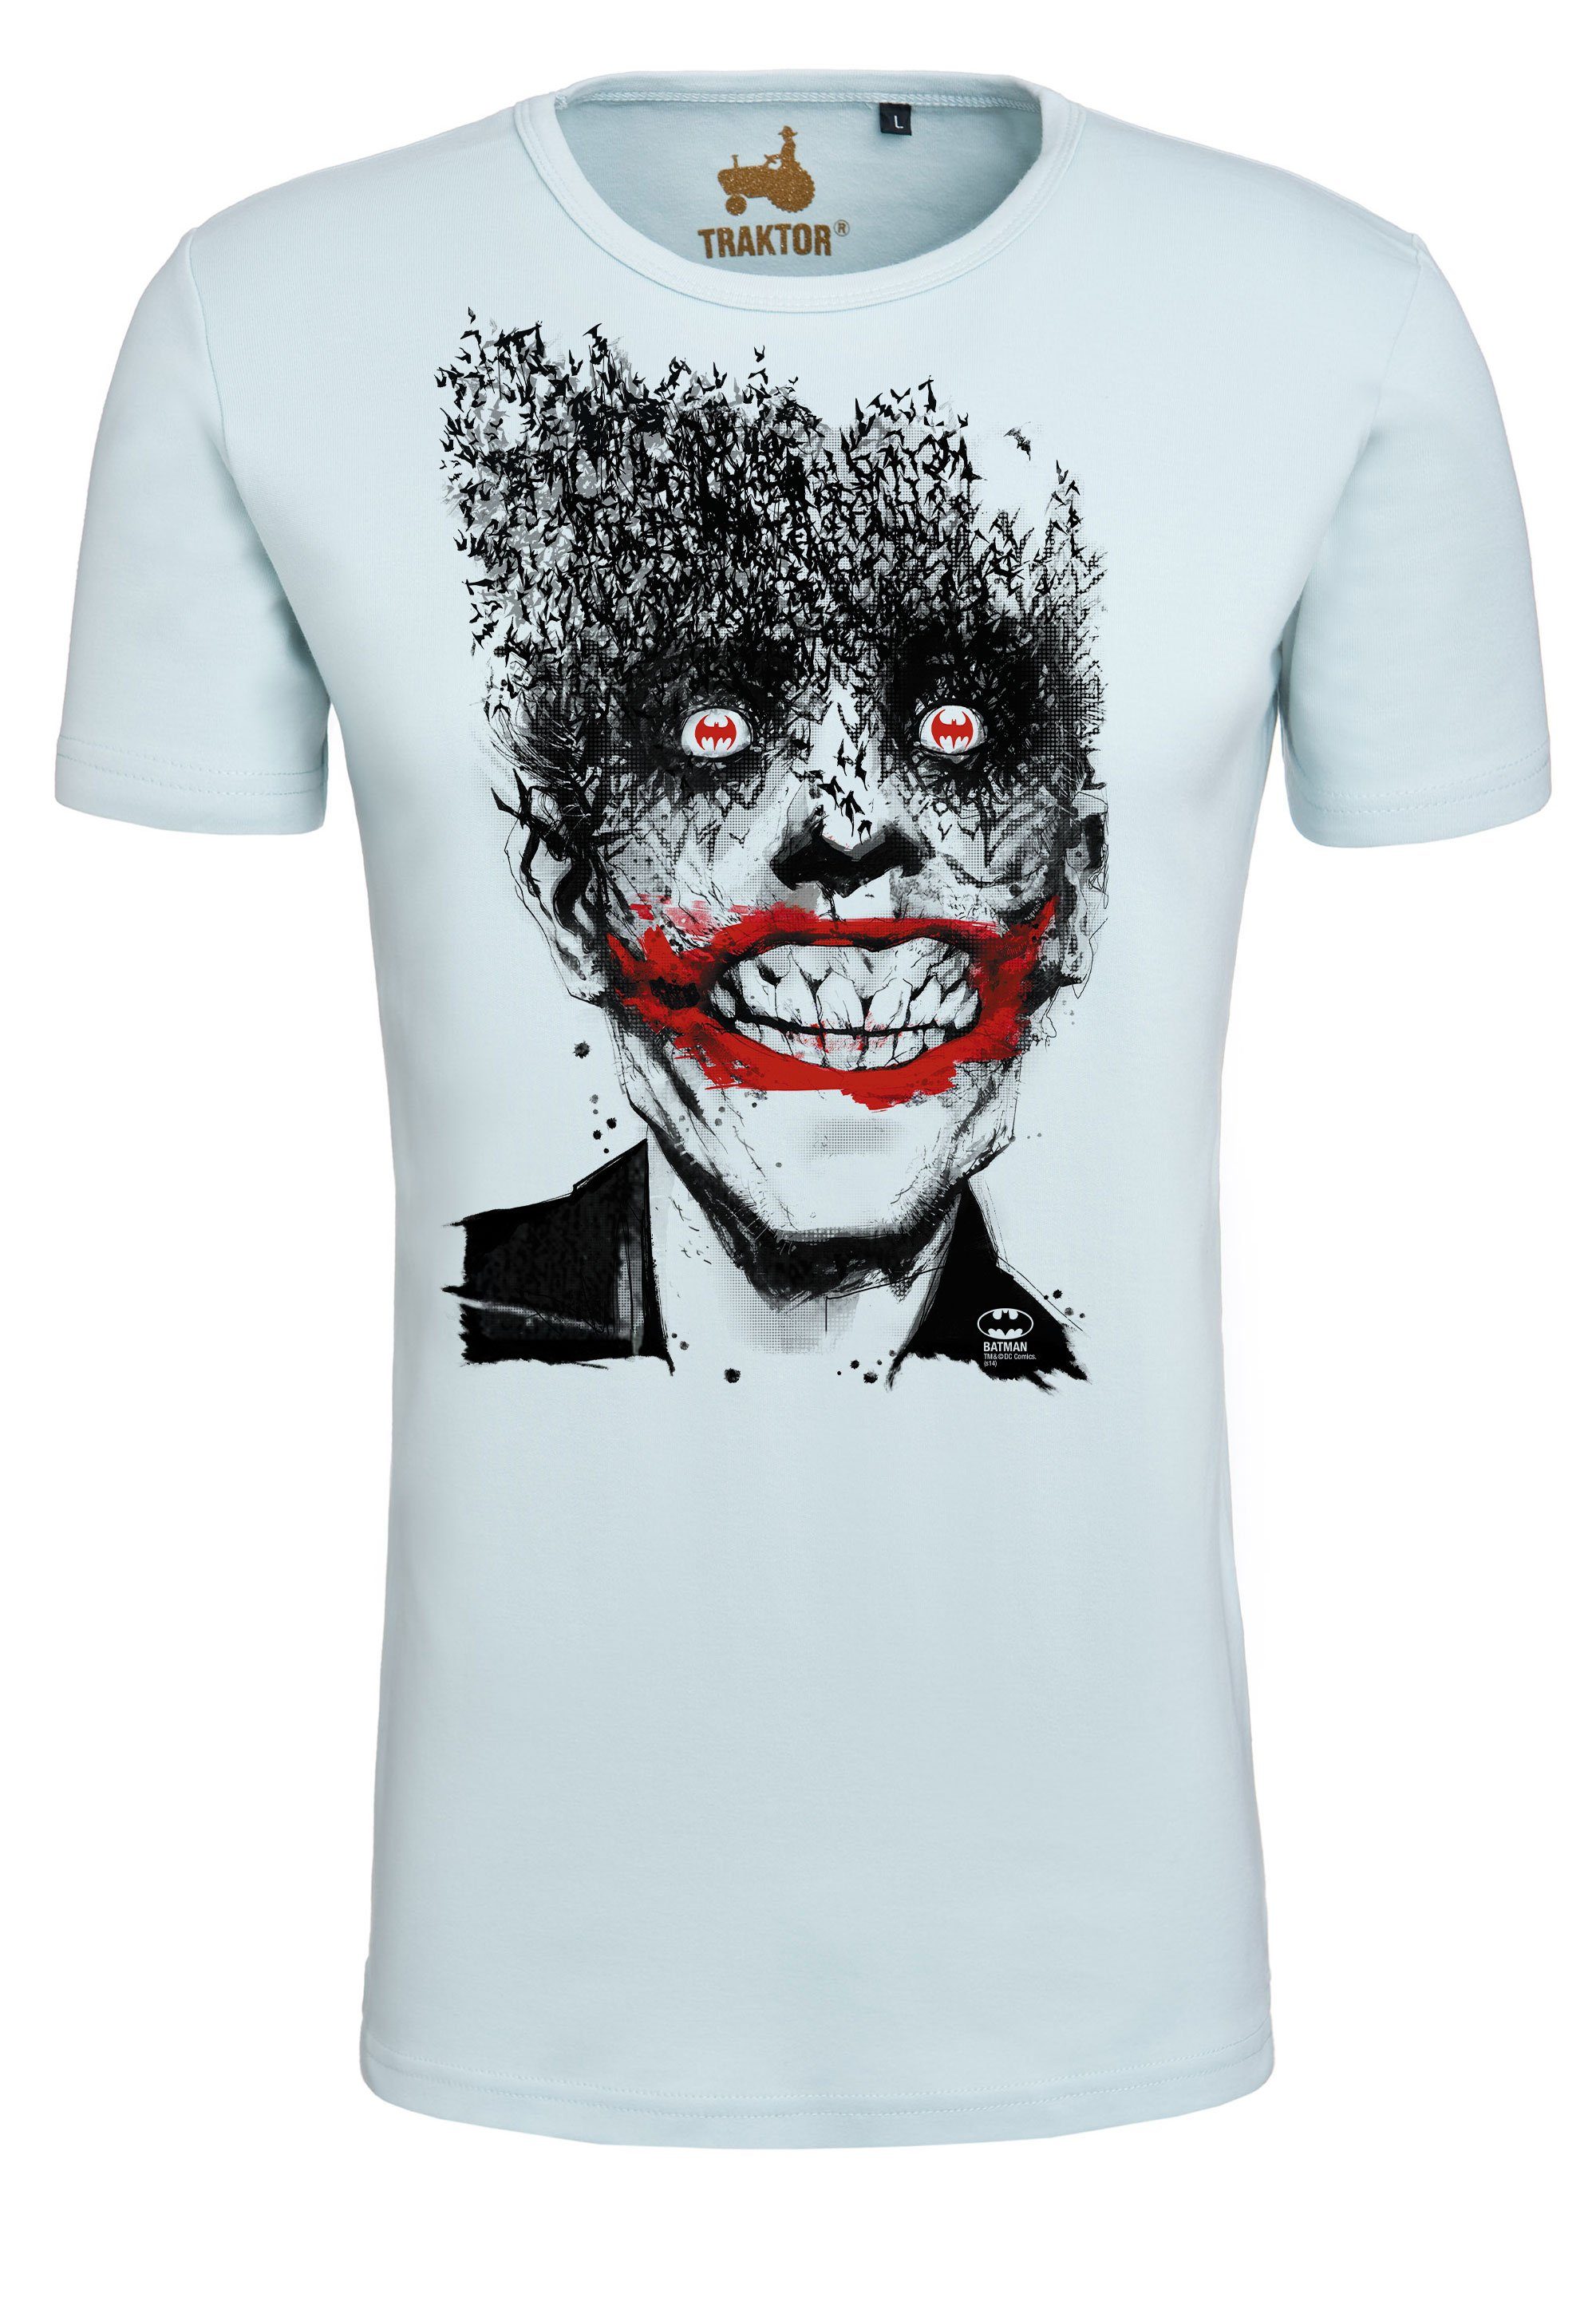 Joker LOGOSHIRT Batman Bats trendigem mit Superschurken-Print T-Shirt -